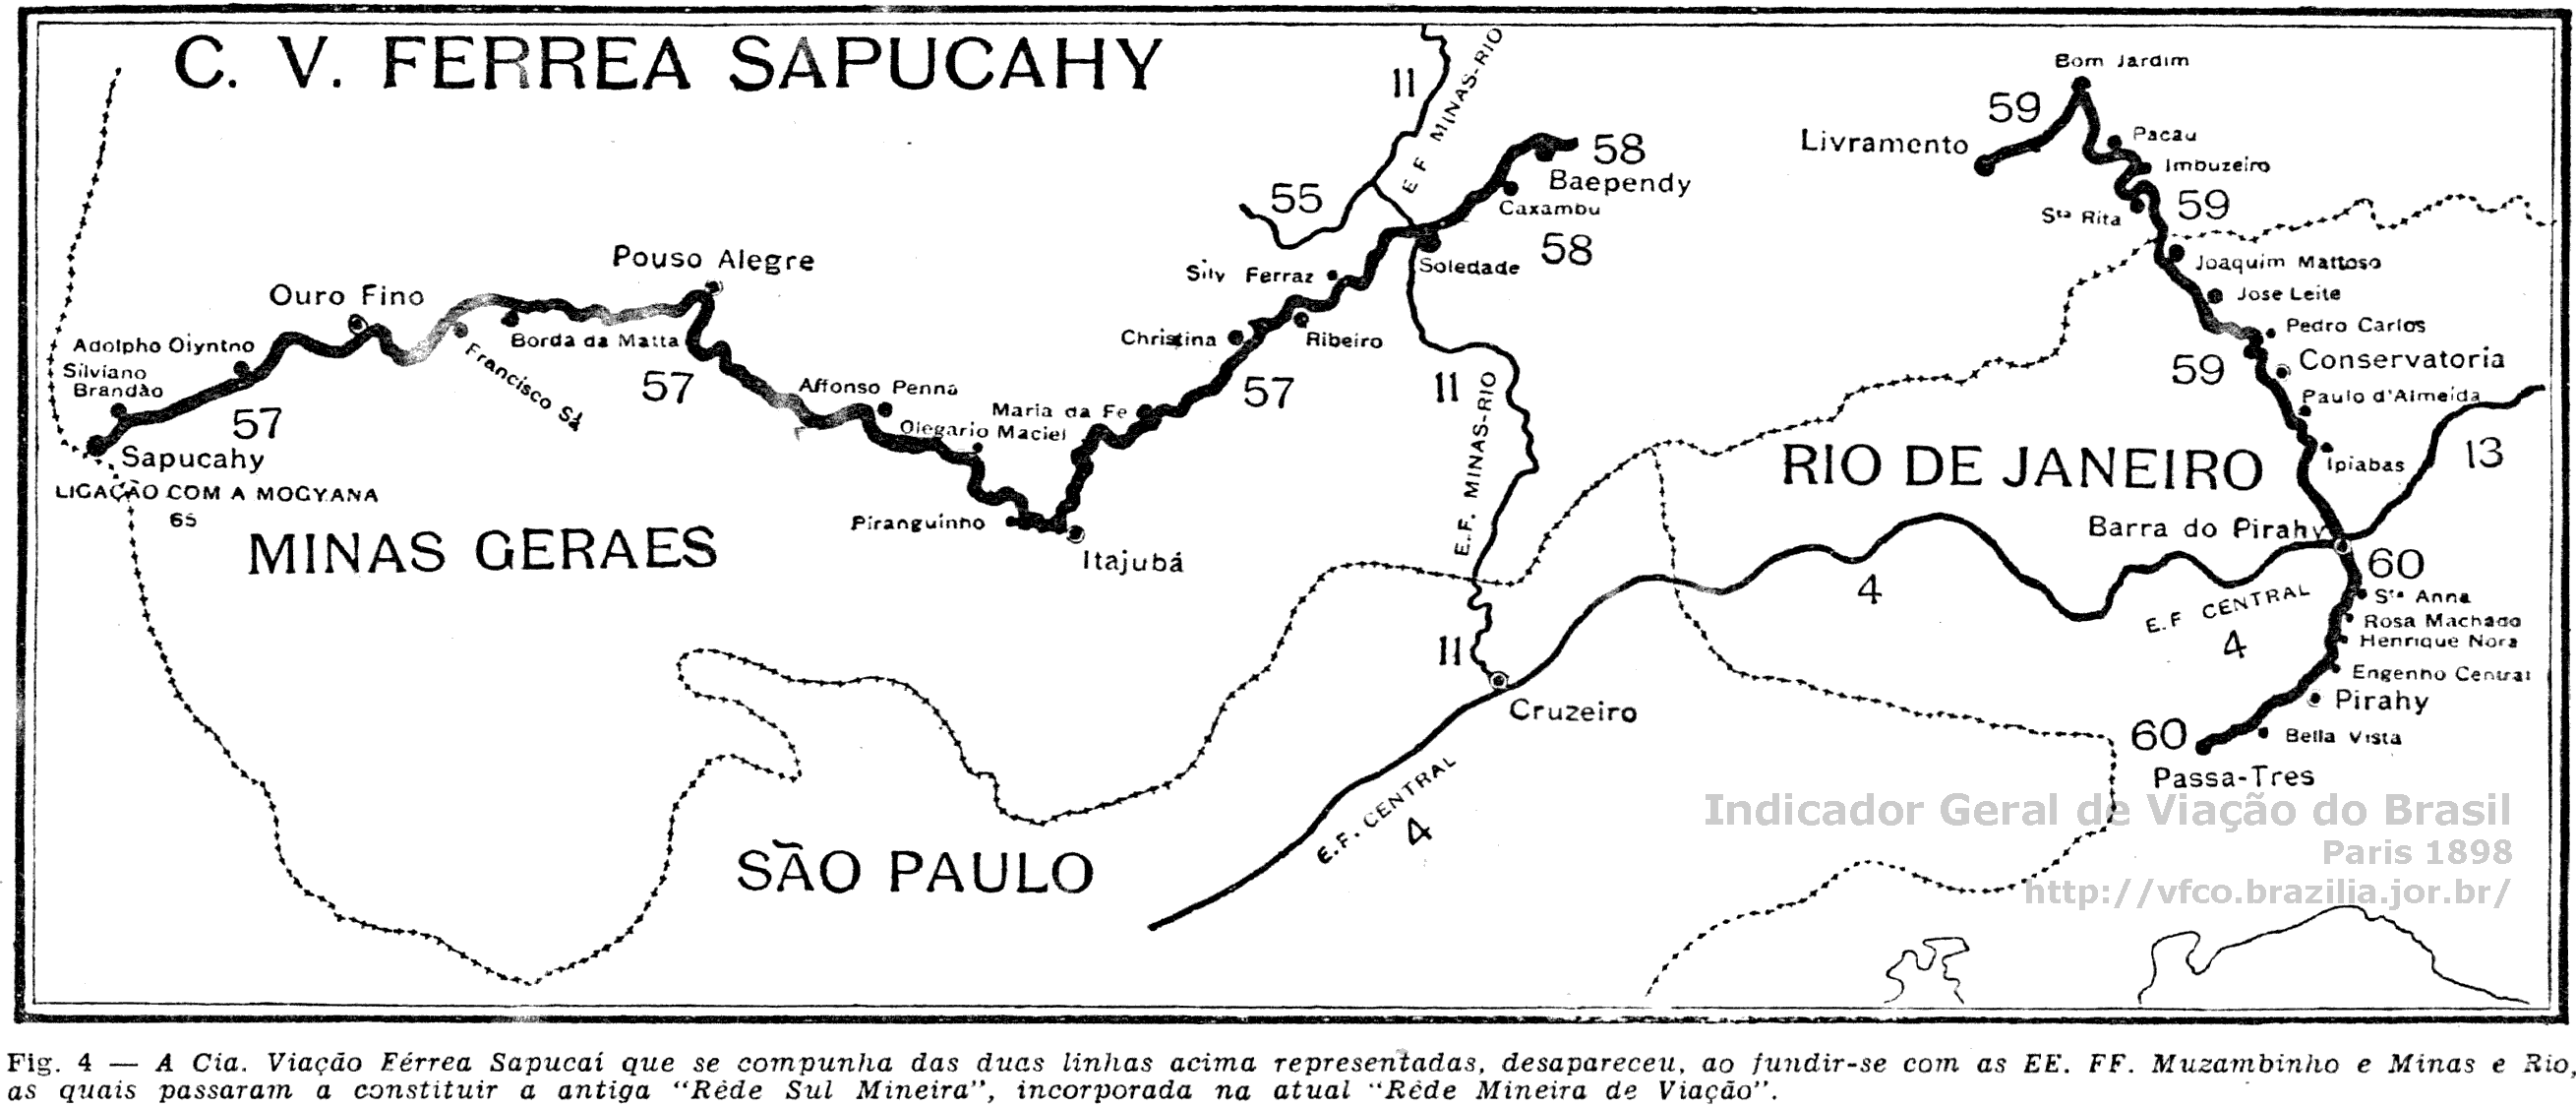 Mapa da Viação Ferrea Sapucarí em 1898